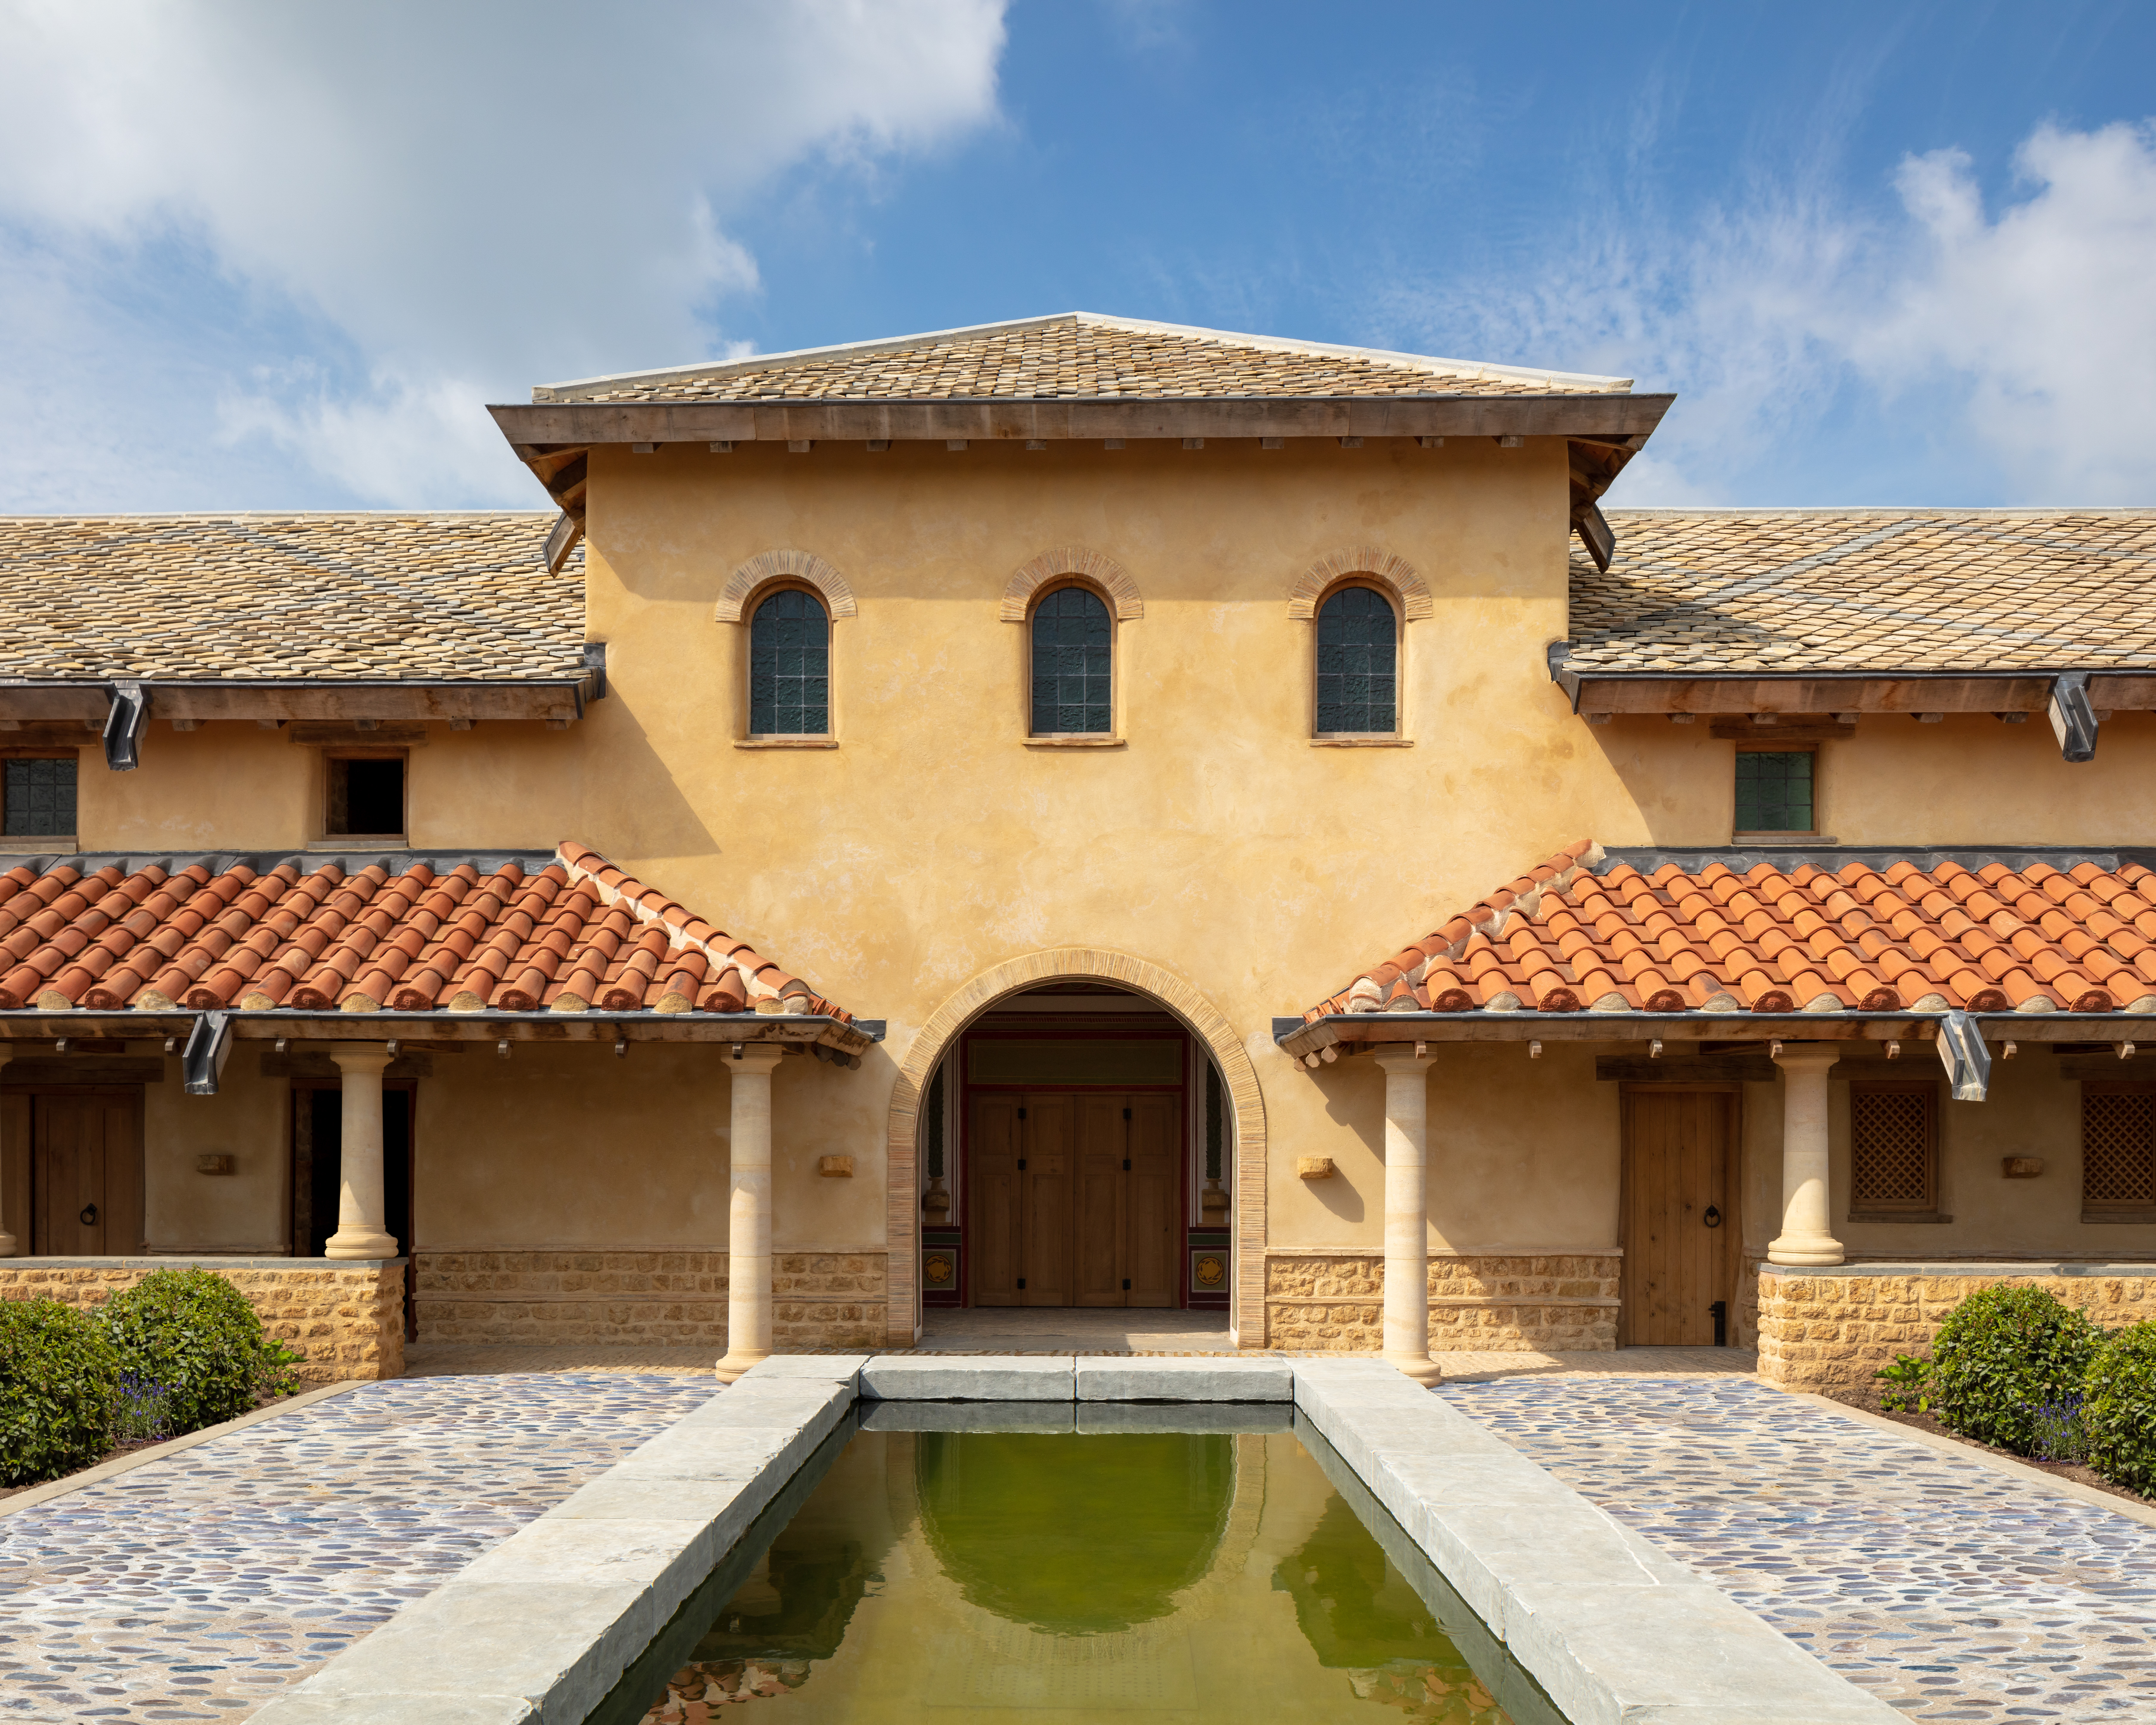 Villa Ventorum – A Roman Estate Reimagined